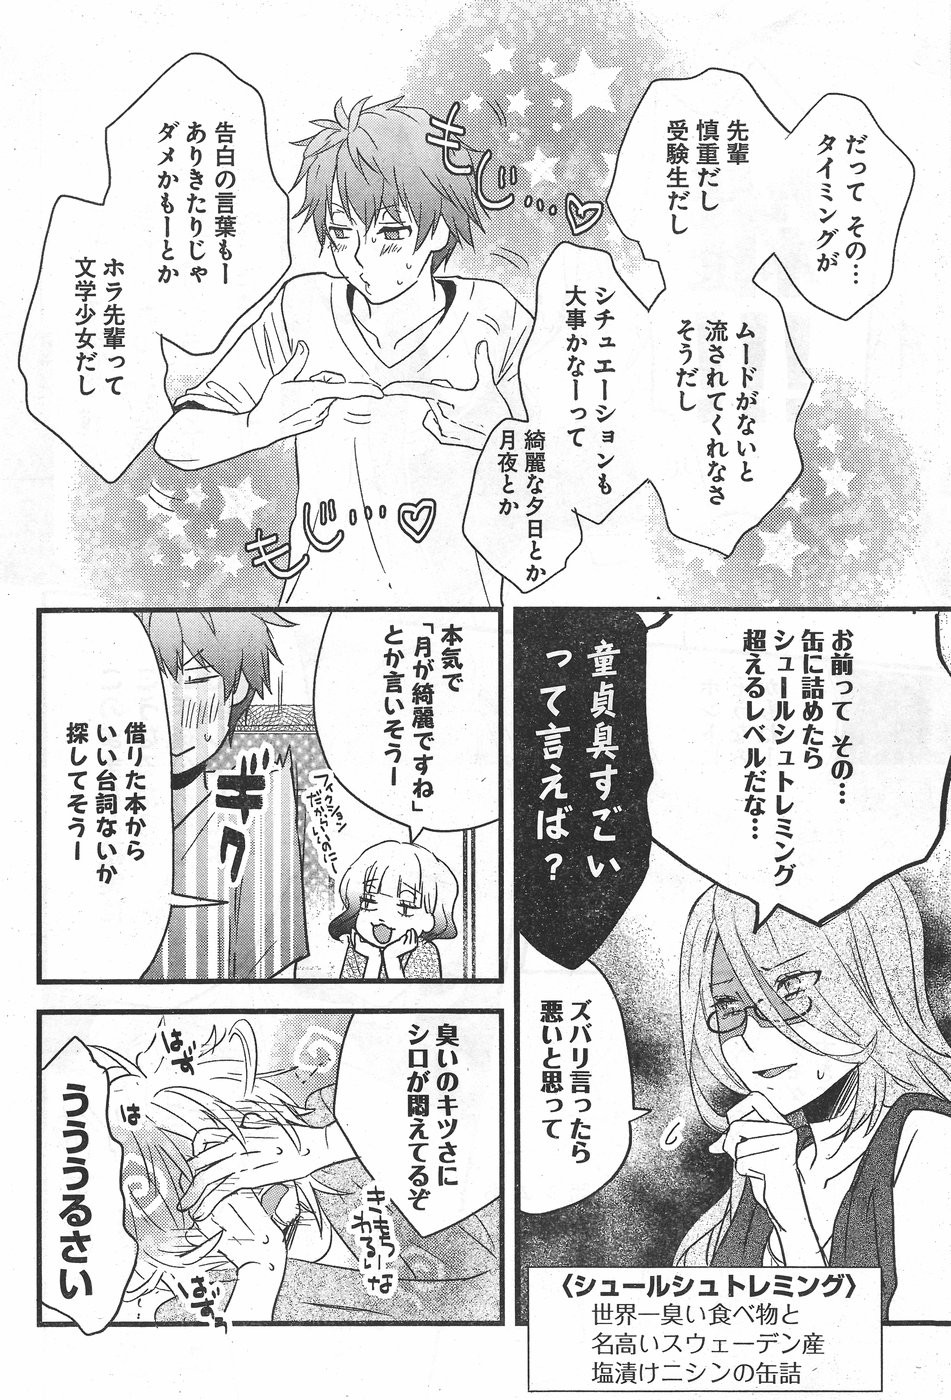 Bokura wa Minna Kawaisou - Chapter 77 - Page 4